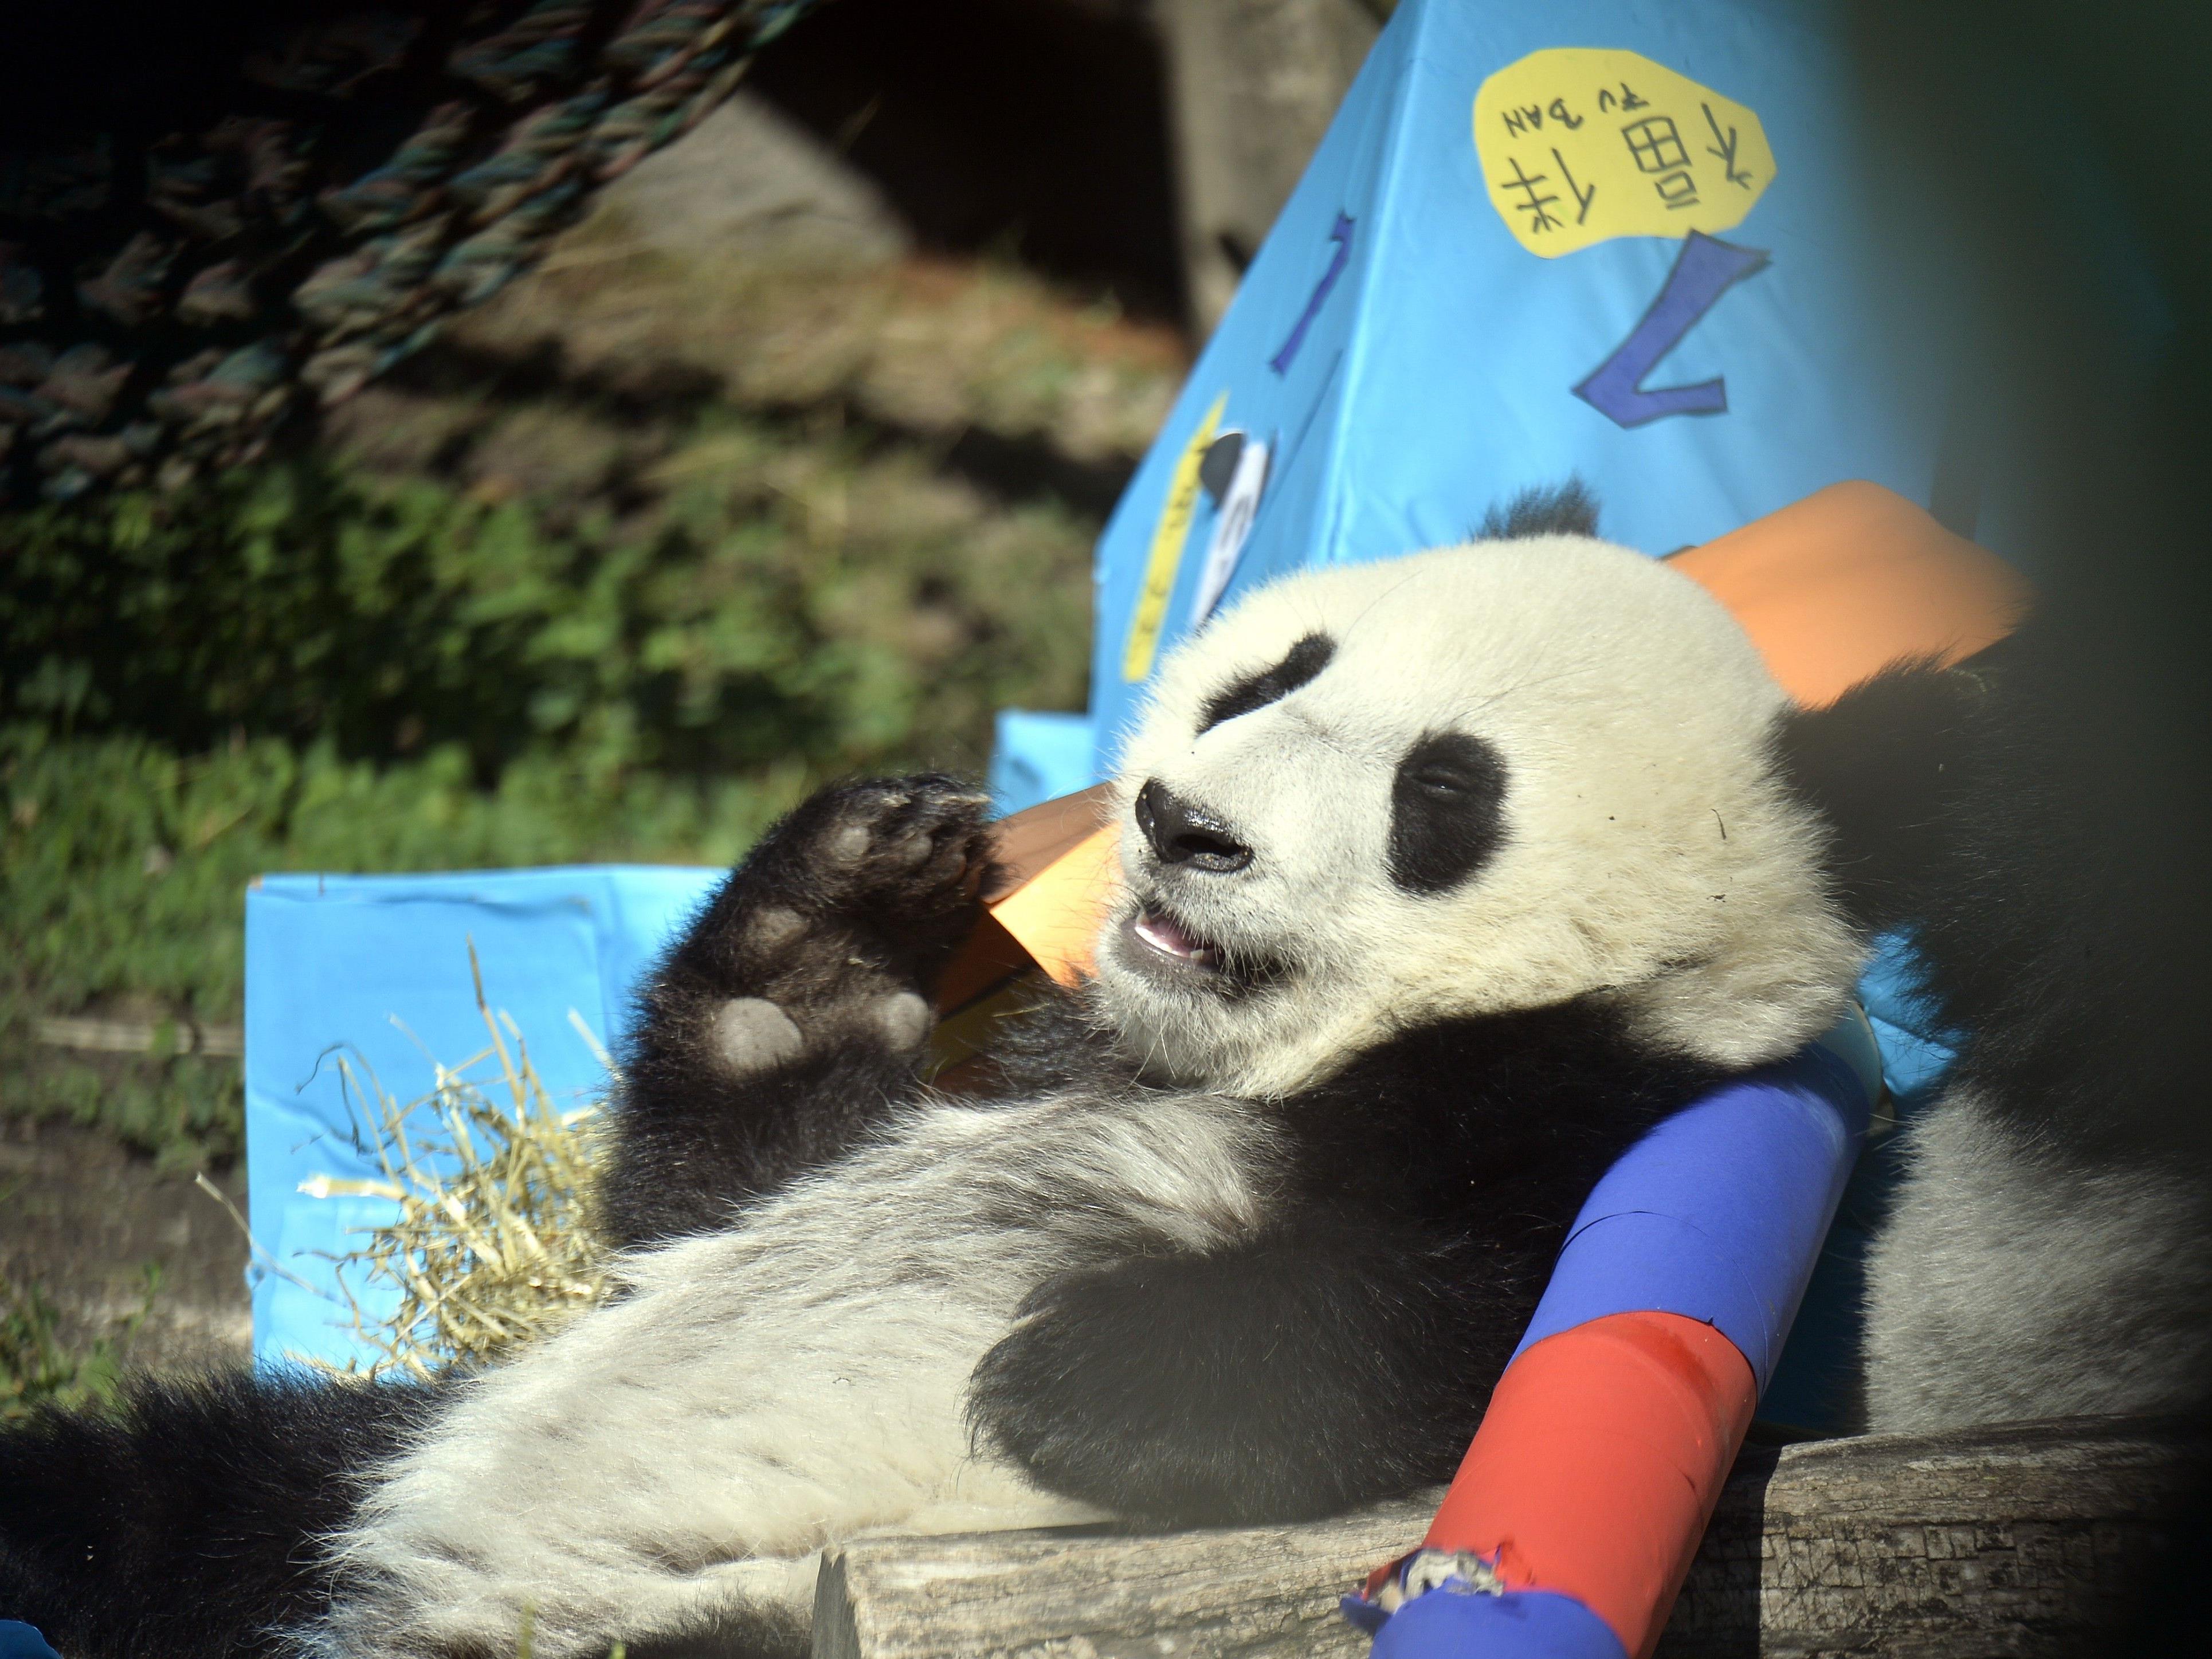 Party-Stimmung bei den Pandas in Schönbrunn, der erste Geburtstag wurde kräftig gefeiert